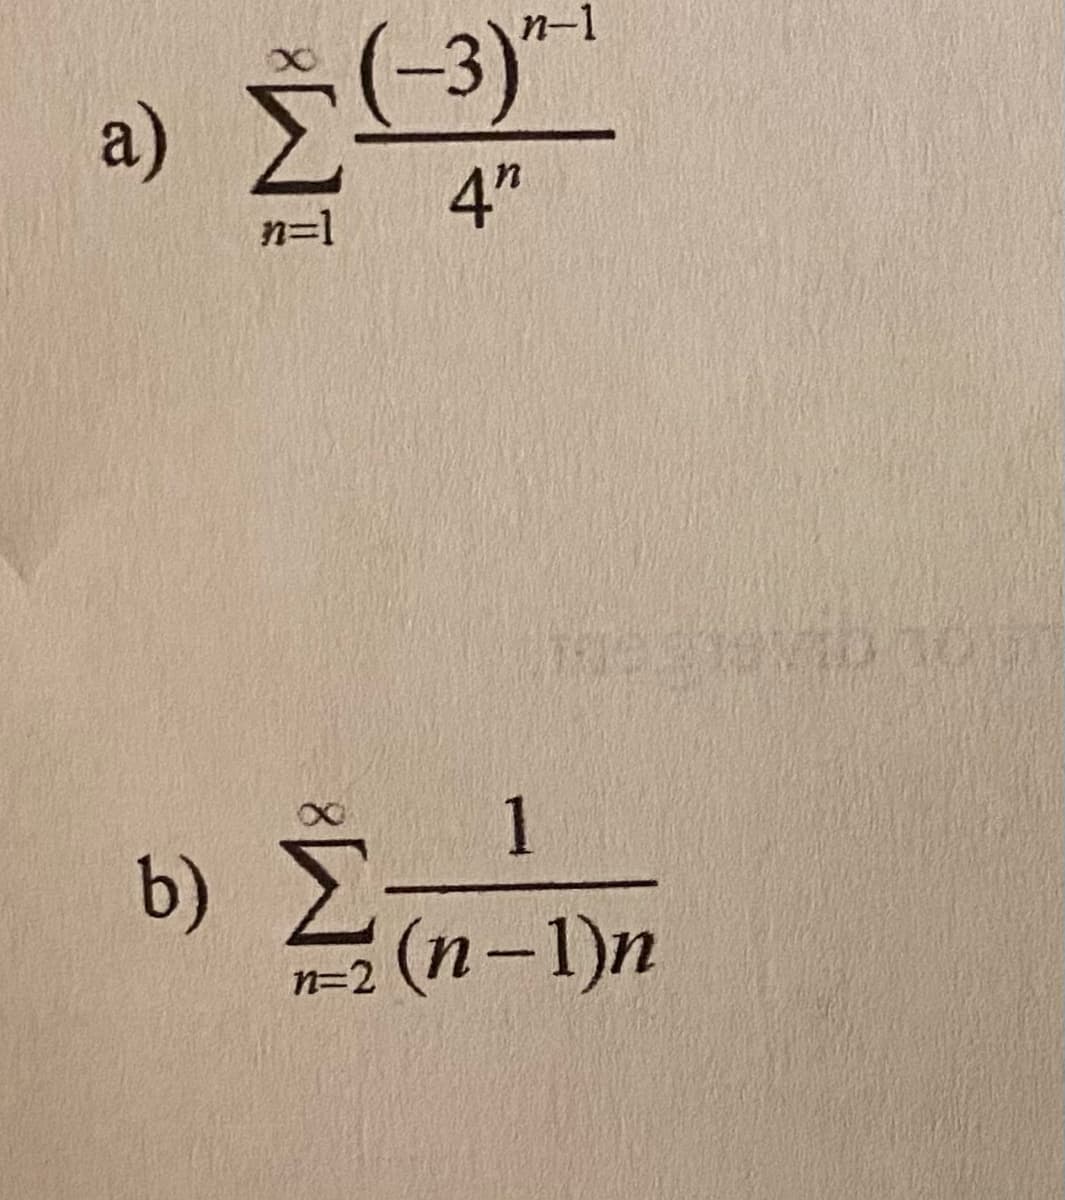 -3)*1
a)
4"
n=1
1
b) E
2 (п-1)п
